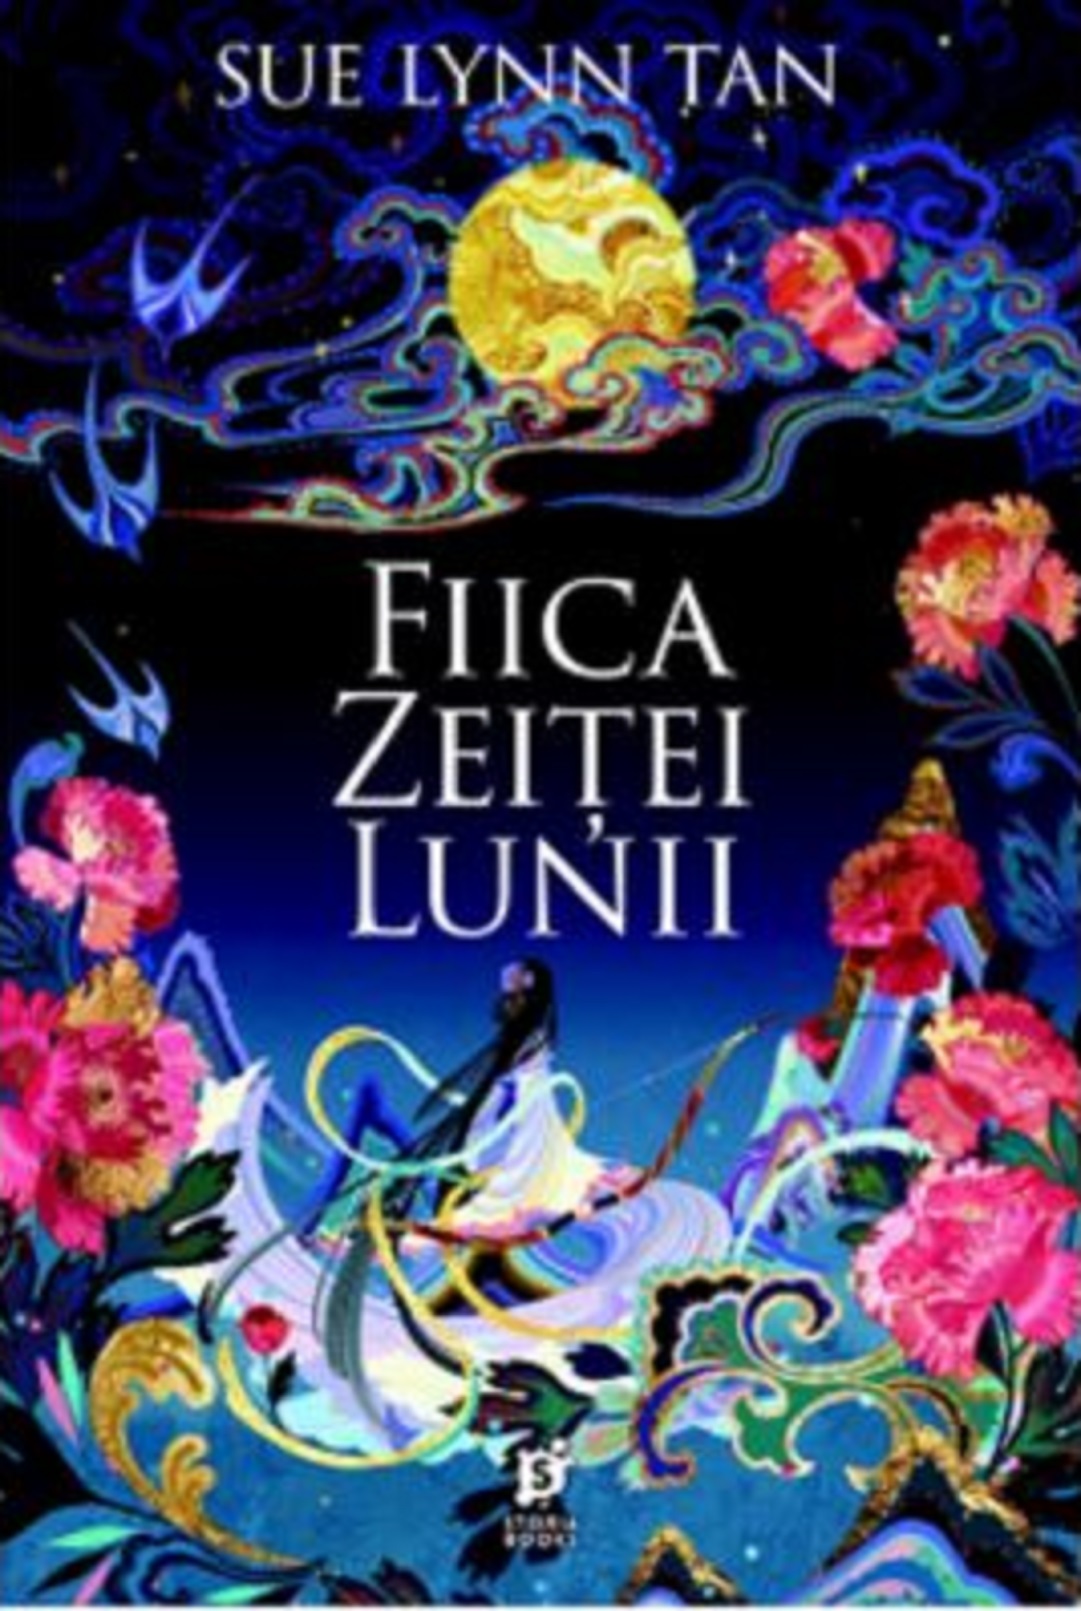 Coperta cărții: Fiica Zeitei Lunii - lonnieyoungblood.com